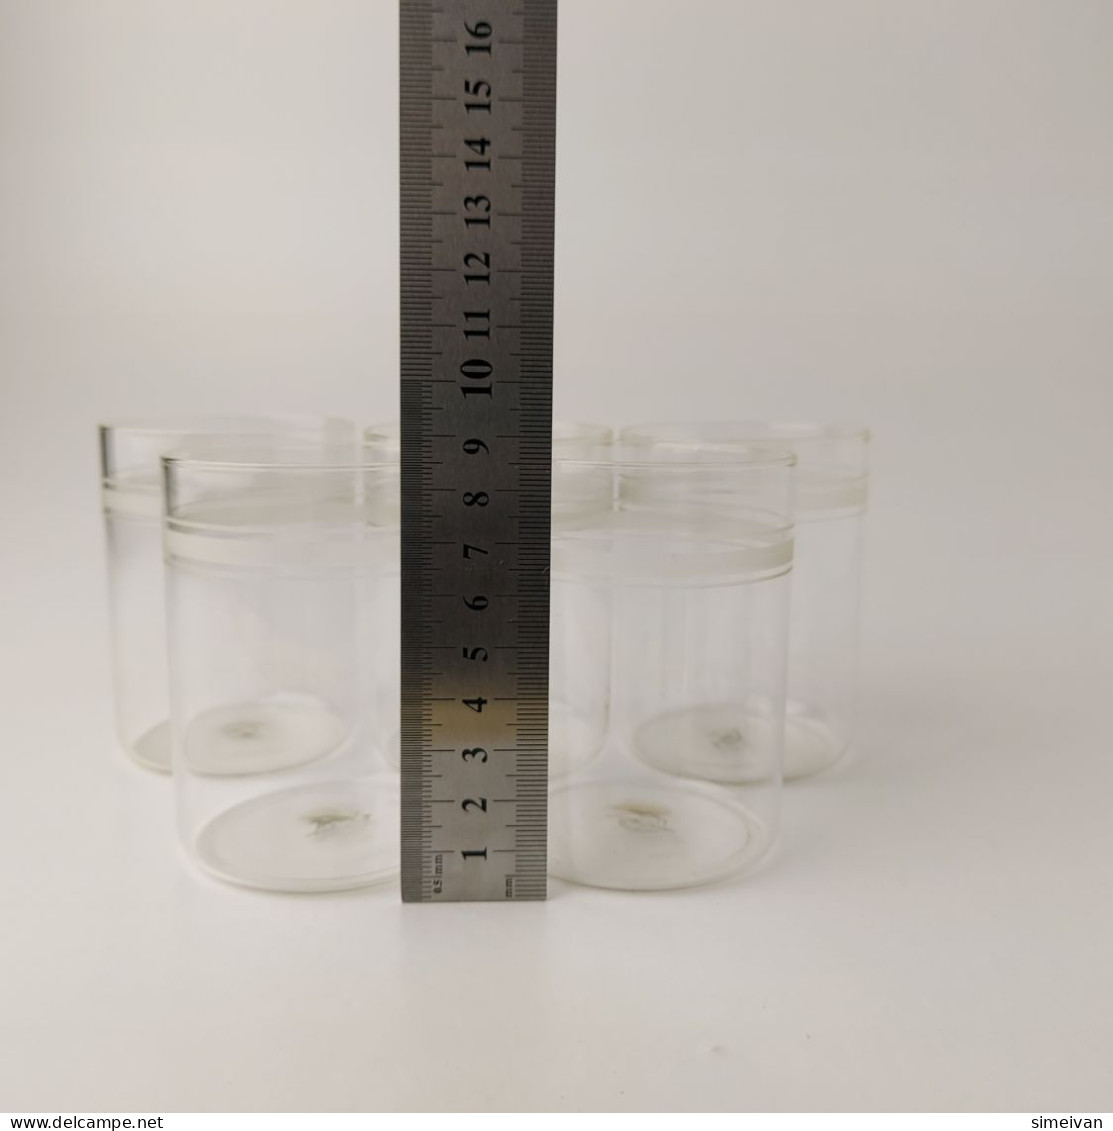 Vintage Saale-Glas GDR Set of 5 Tea Cup Glasses for Podstakannik Holders #5487